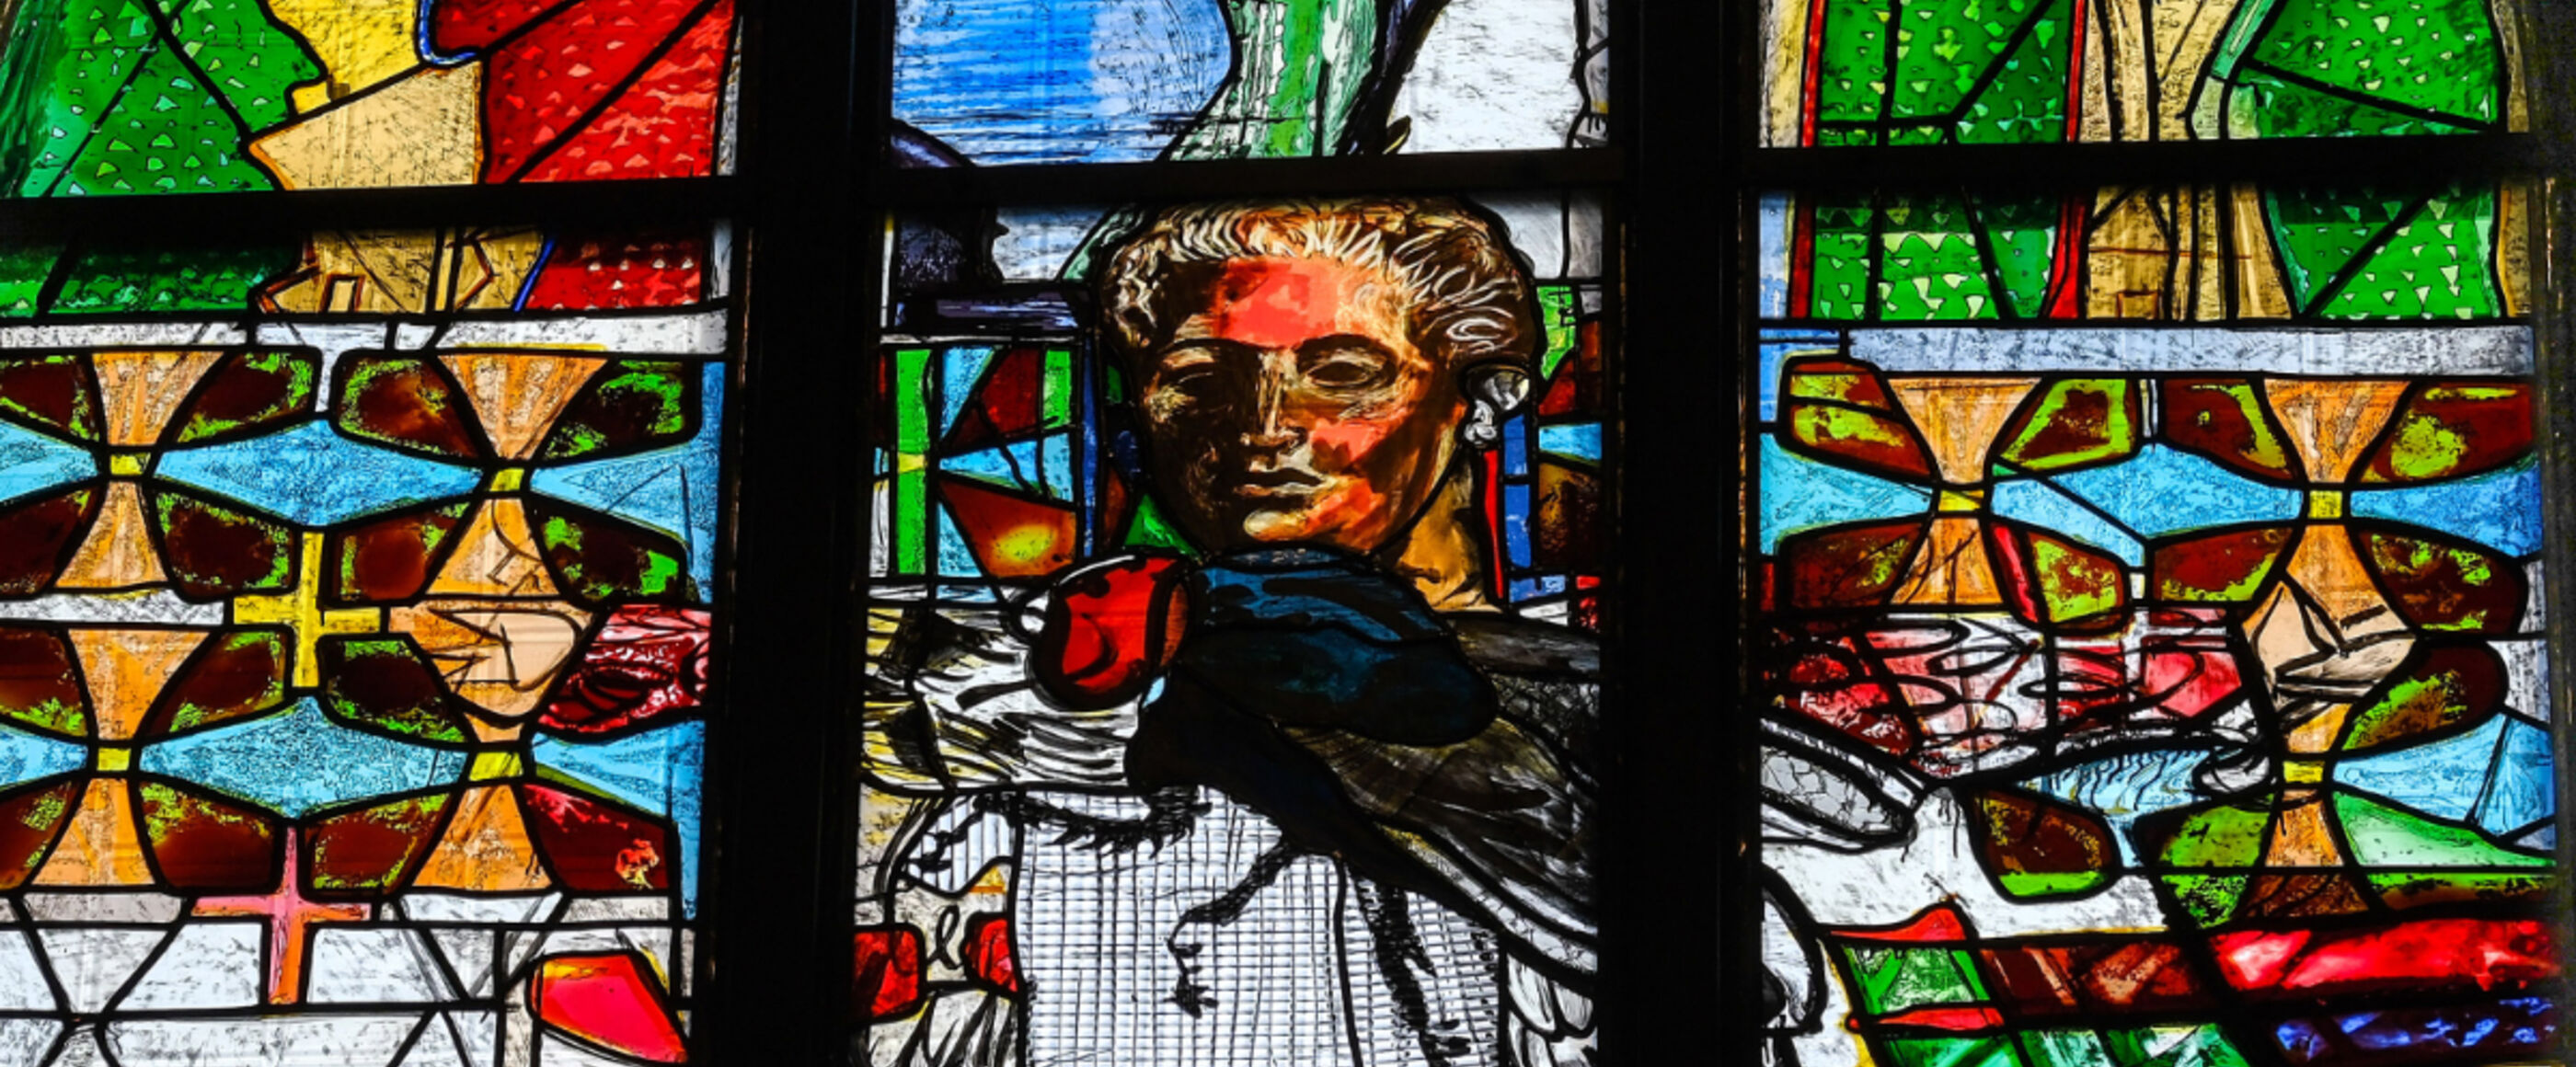 Ein buntes Kirchenfenster mit einem Bild von Martin Luther und einer großen Fliege ist zu sehen.